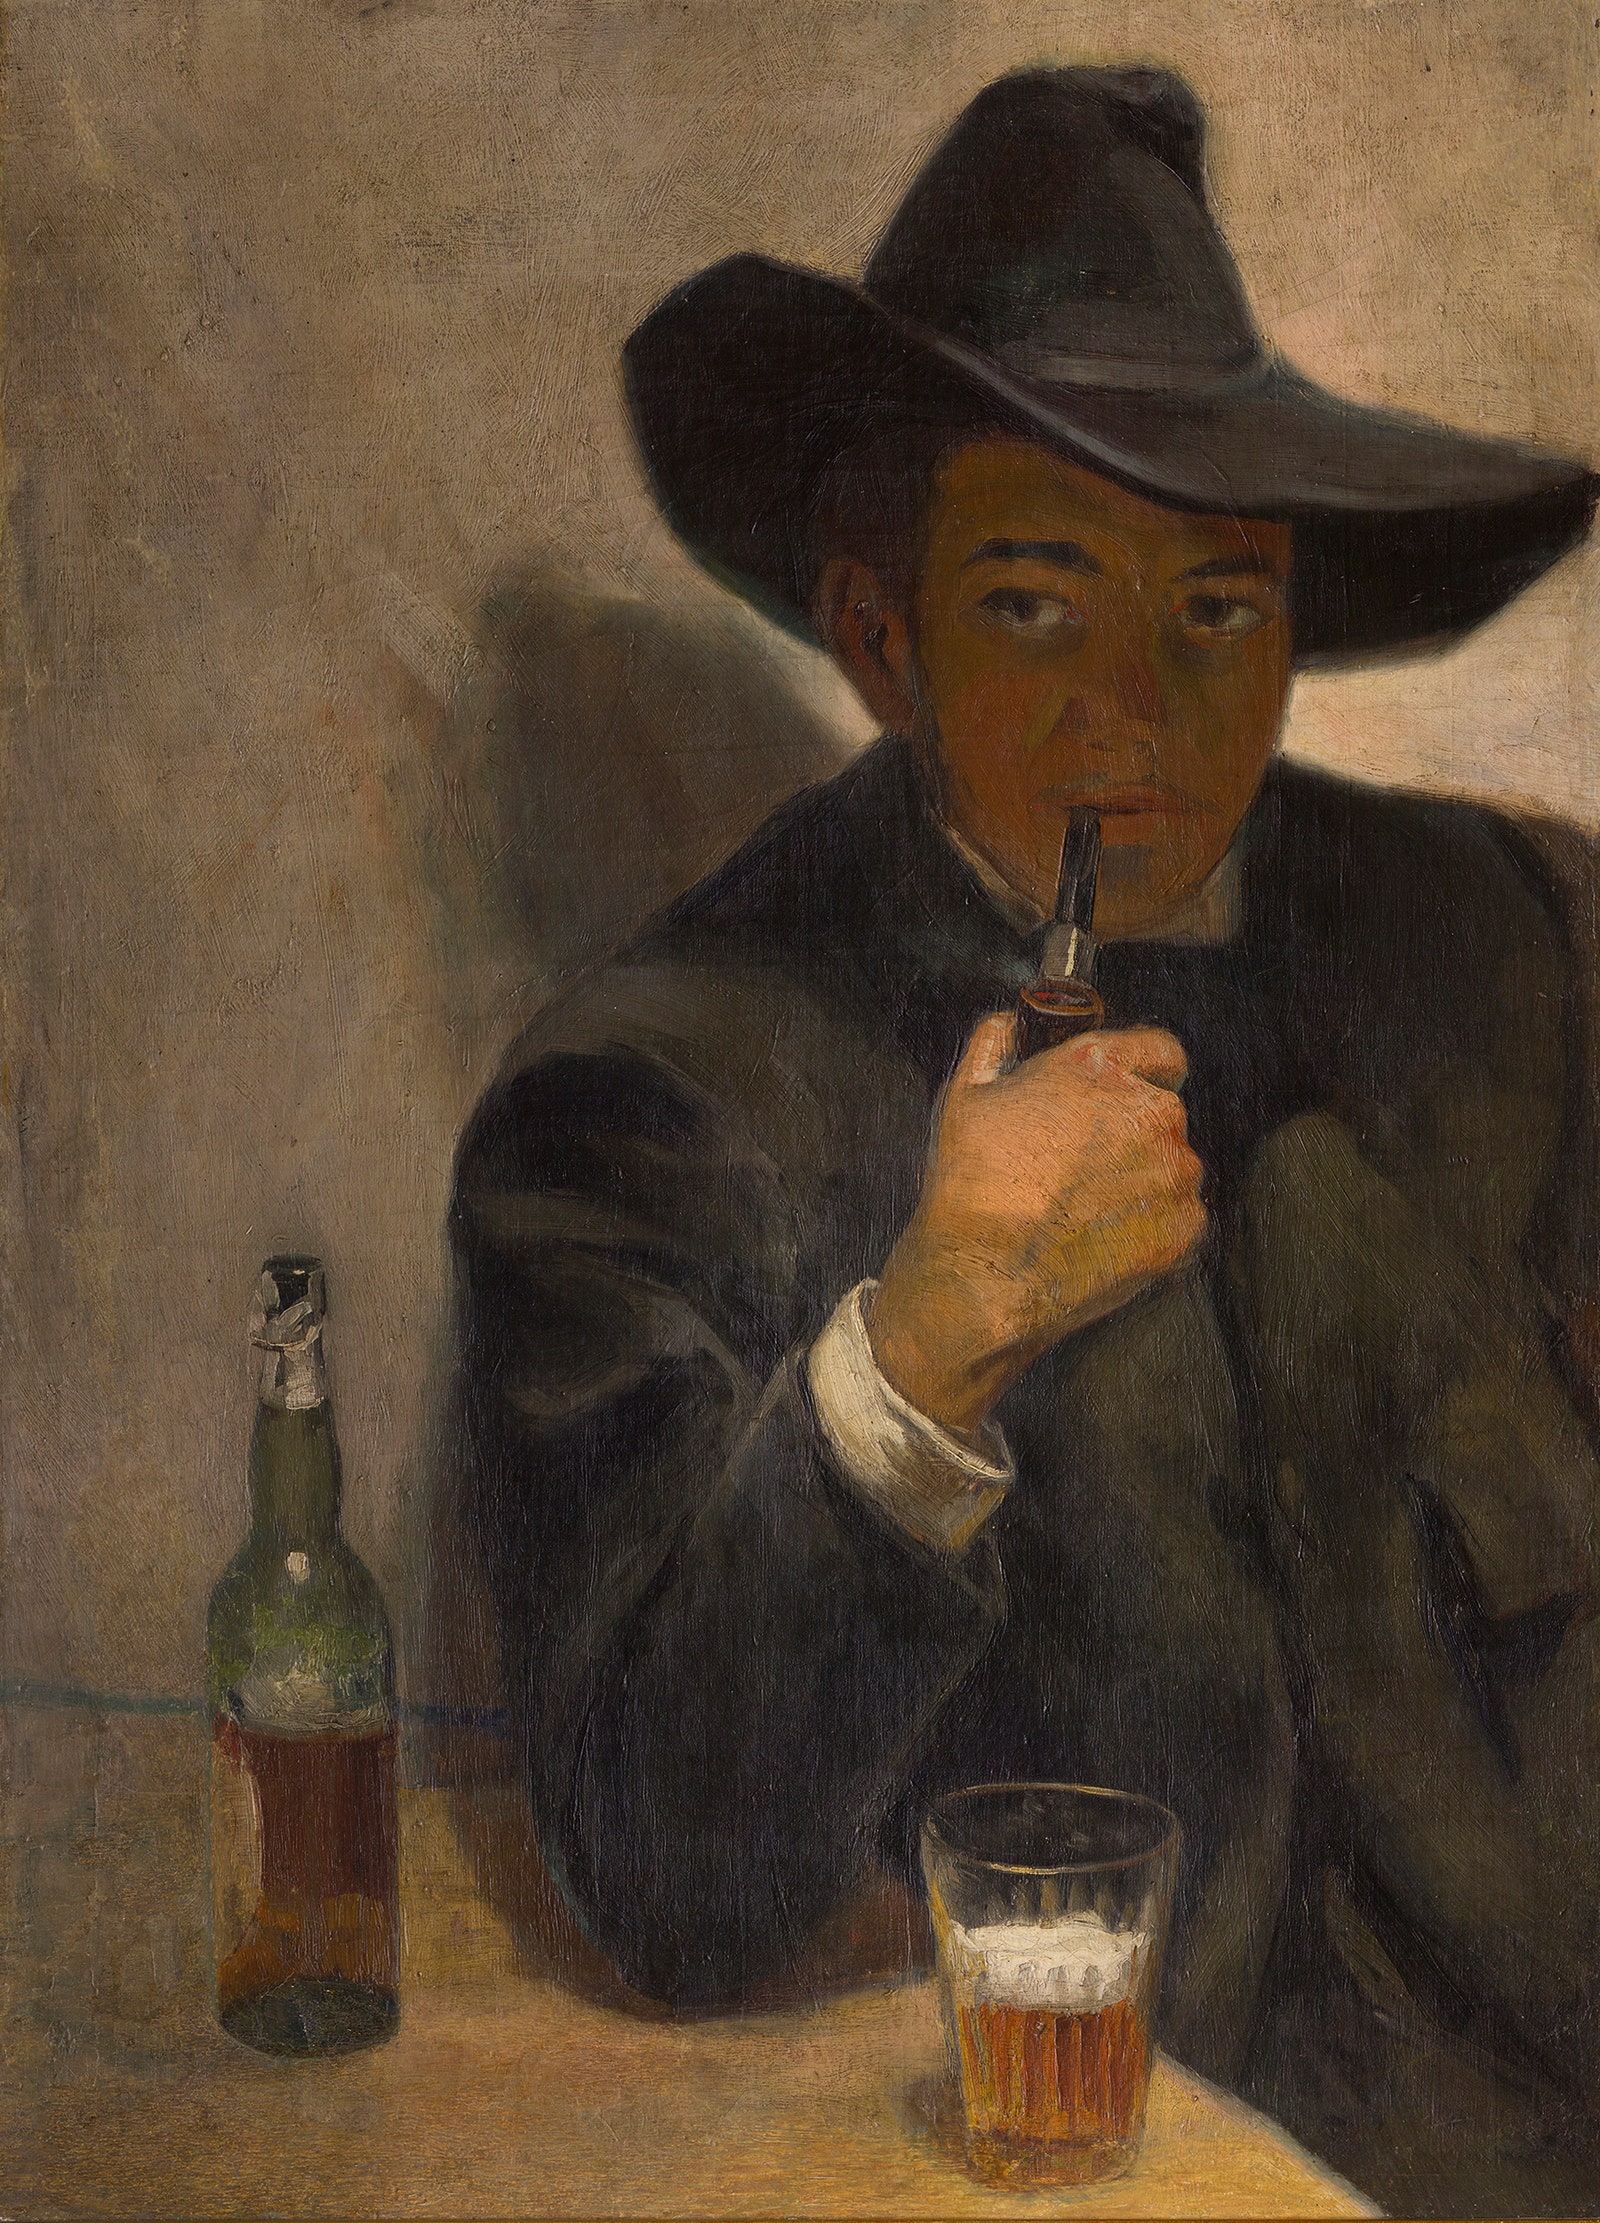 Диего Ривера. Автопортрет в шляпе. 1907. Холст масло. 85 x 622. Музей Долрес Ольмедо.